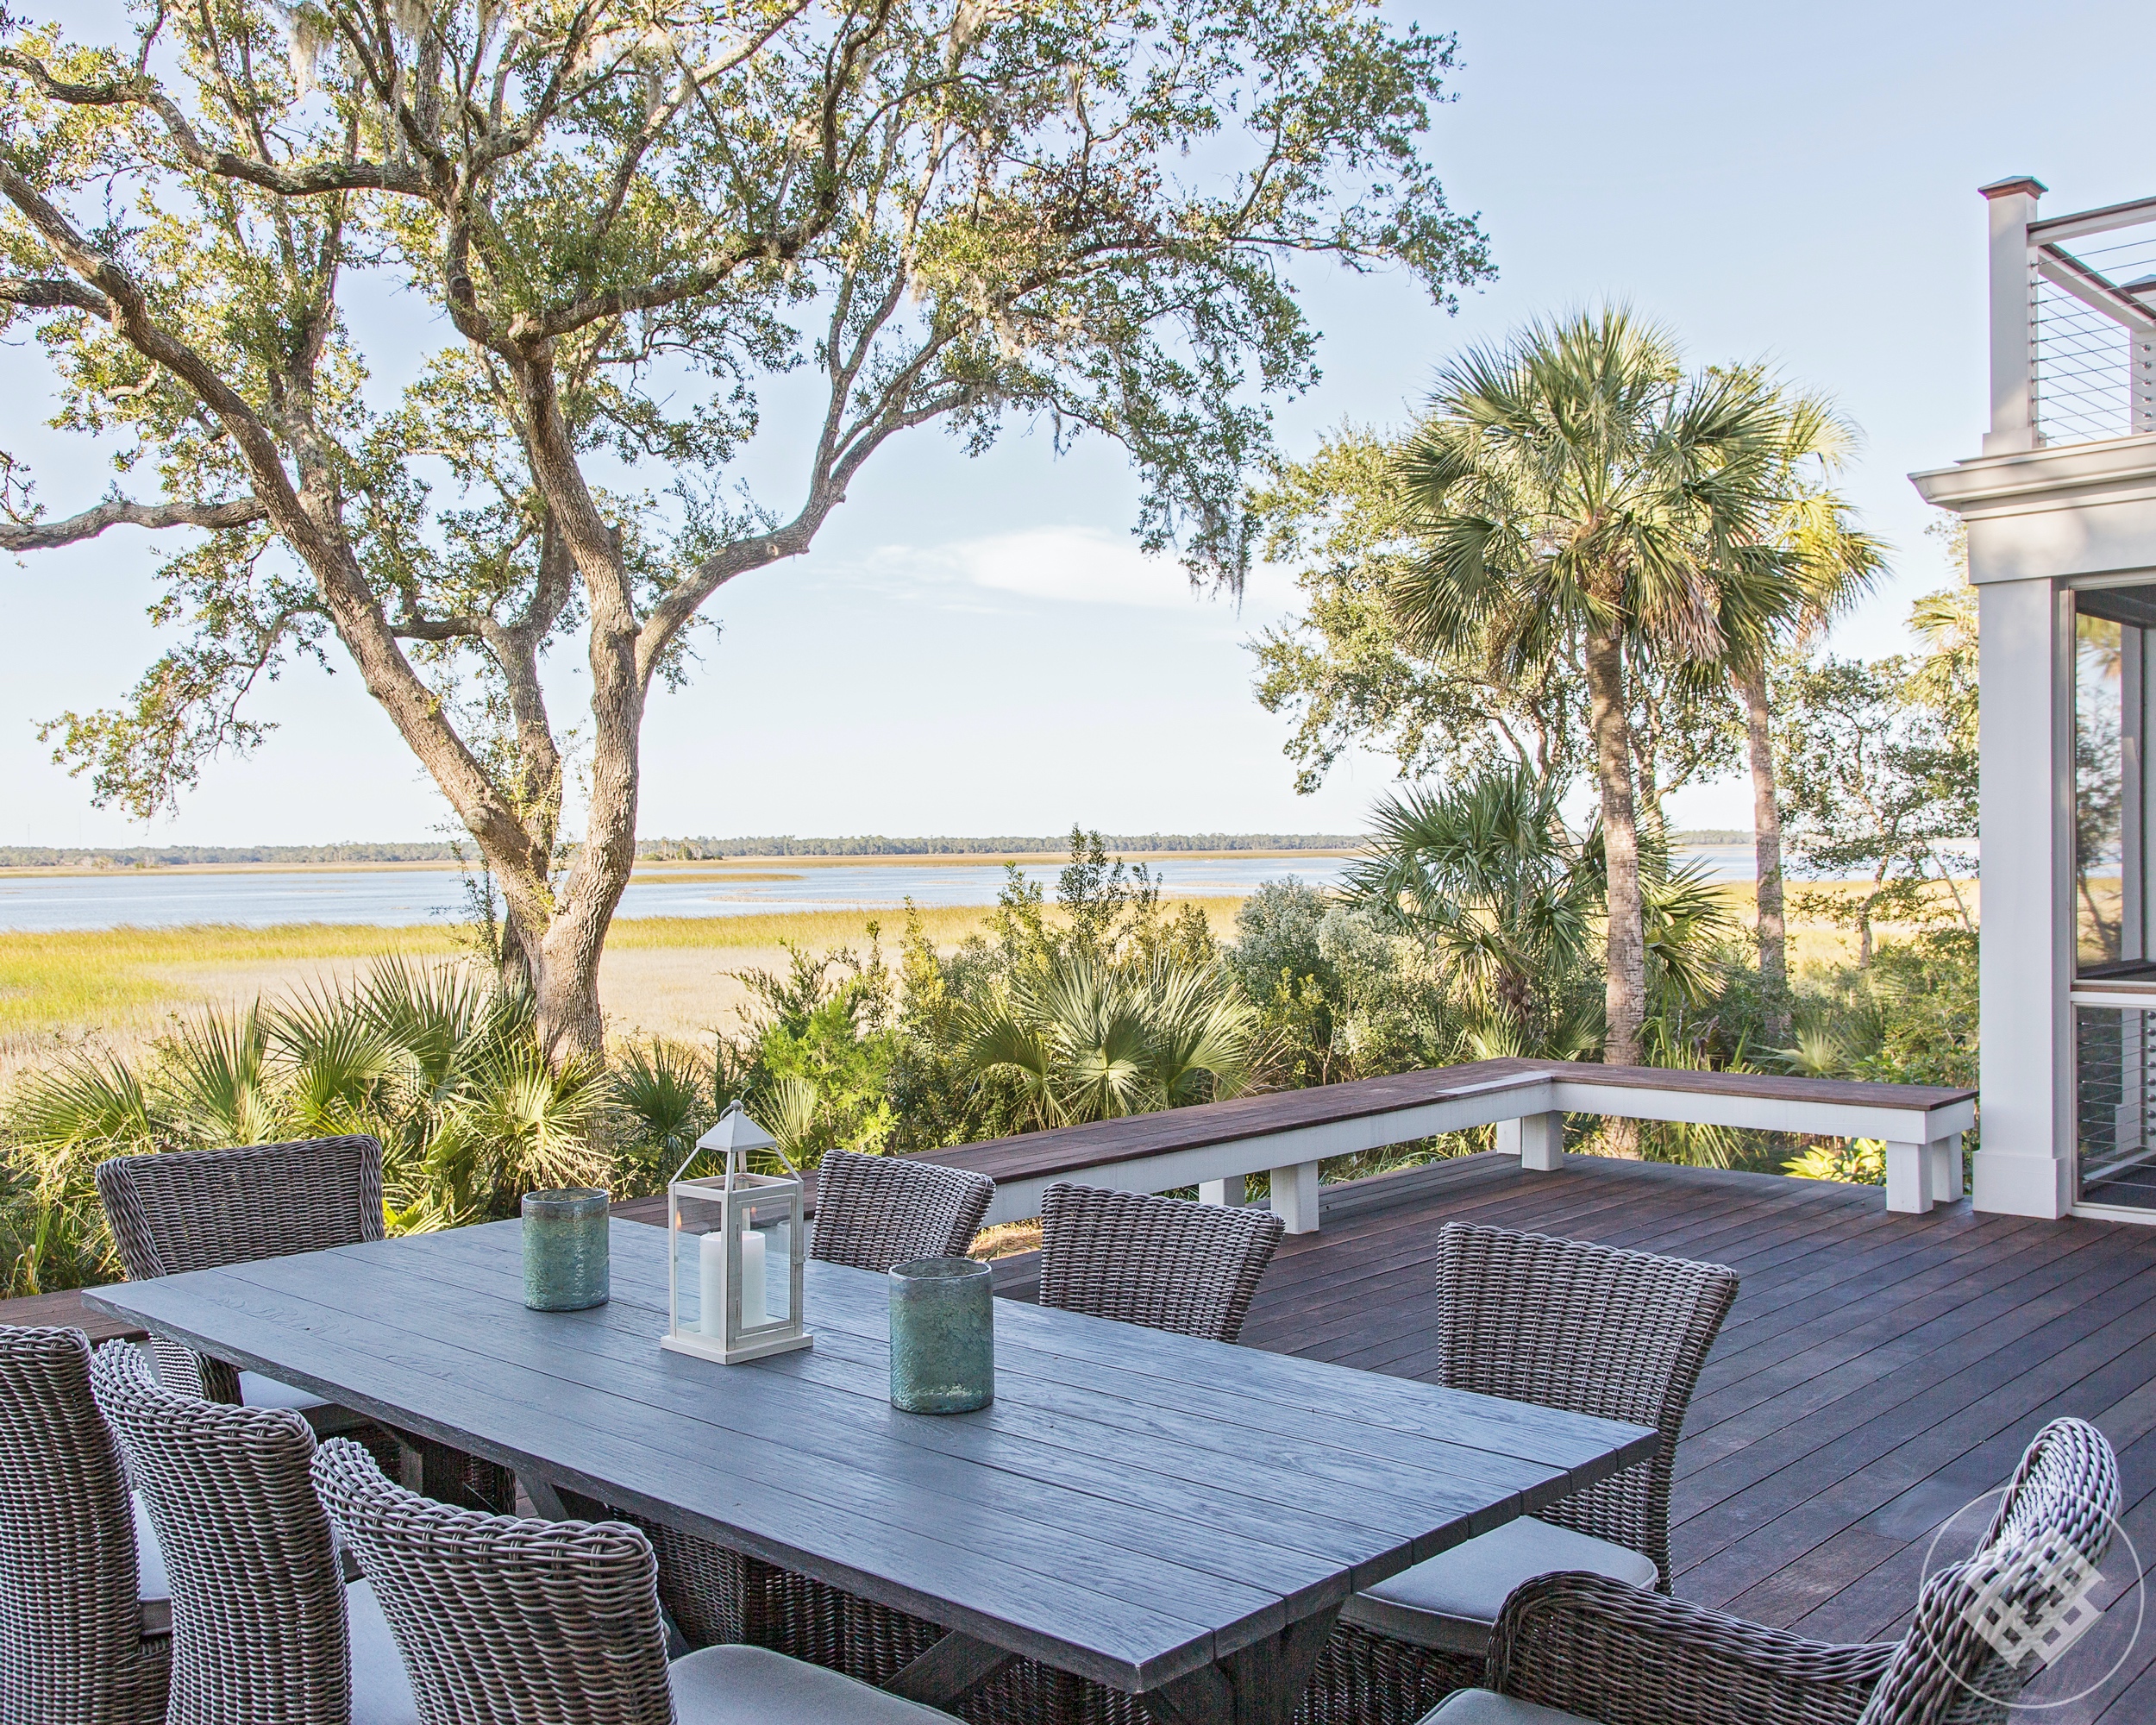 hss-deck-outdoor-teak-dining-set-overlooking-marsh.jpg